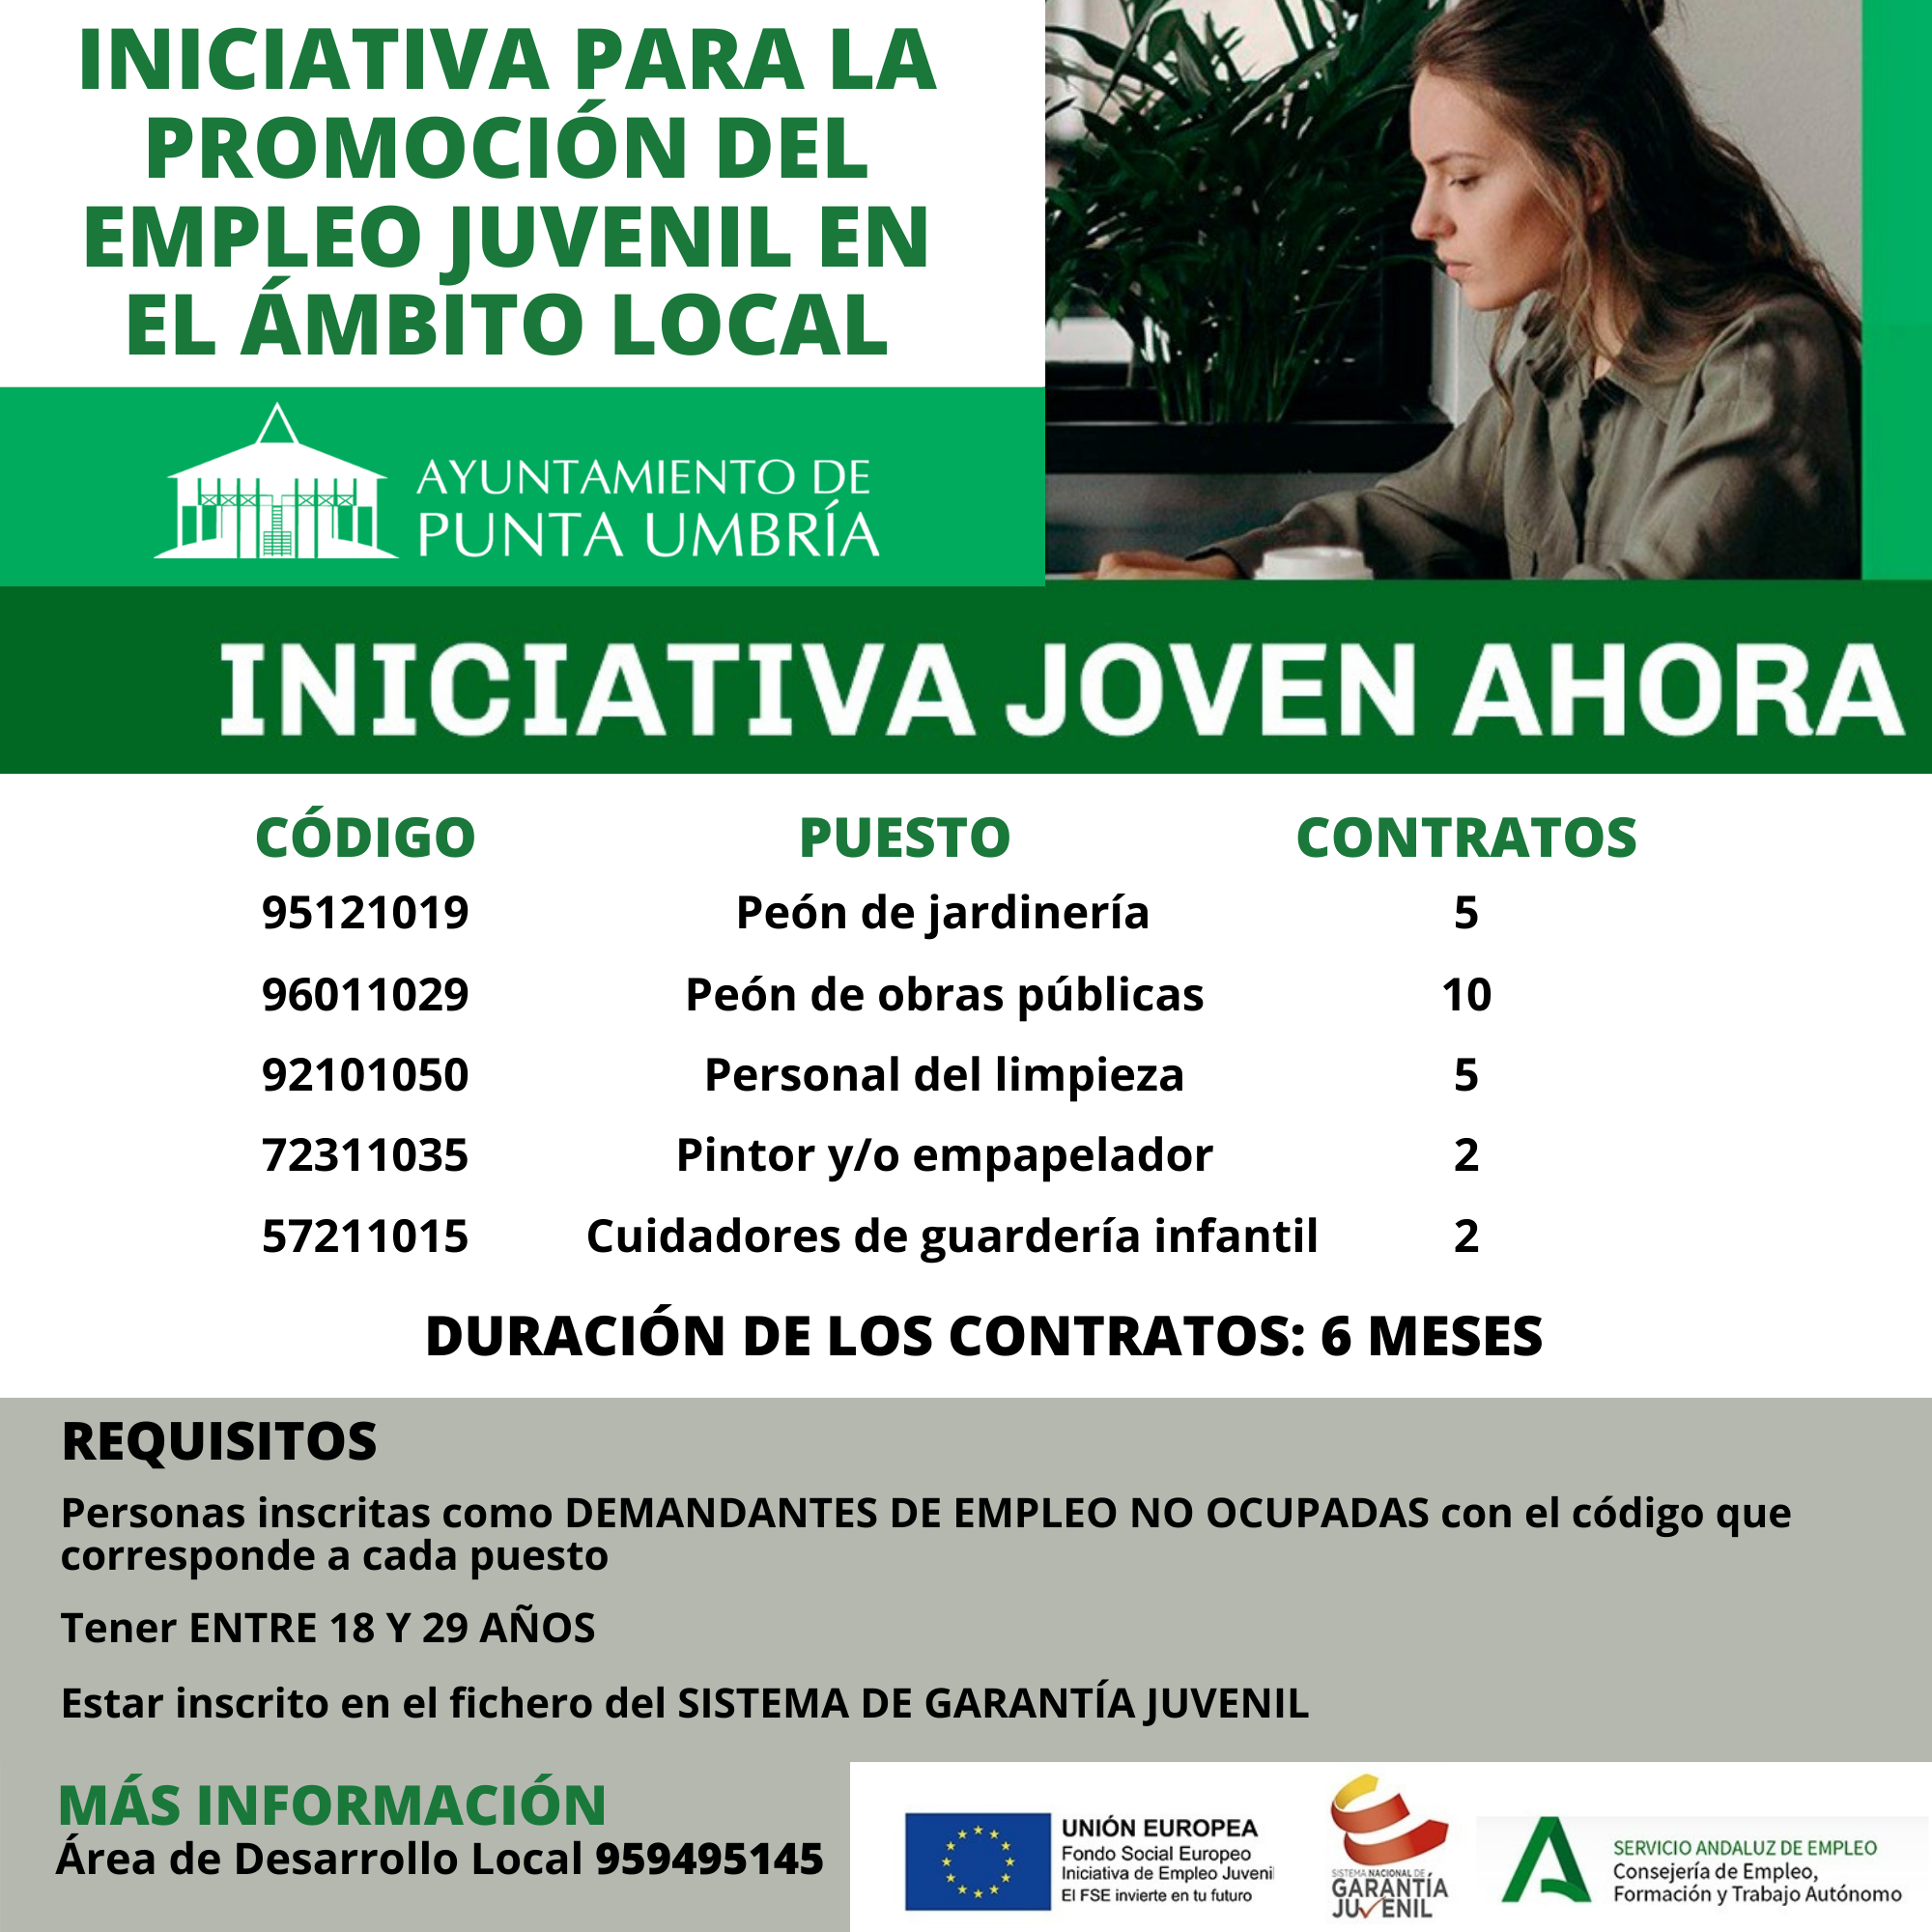 El Ayuntamiento de Punta Umbría pone en marcha una iniciativa para la promoción del empleo juvenil